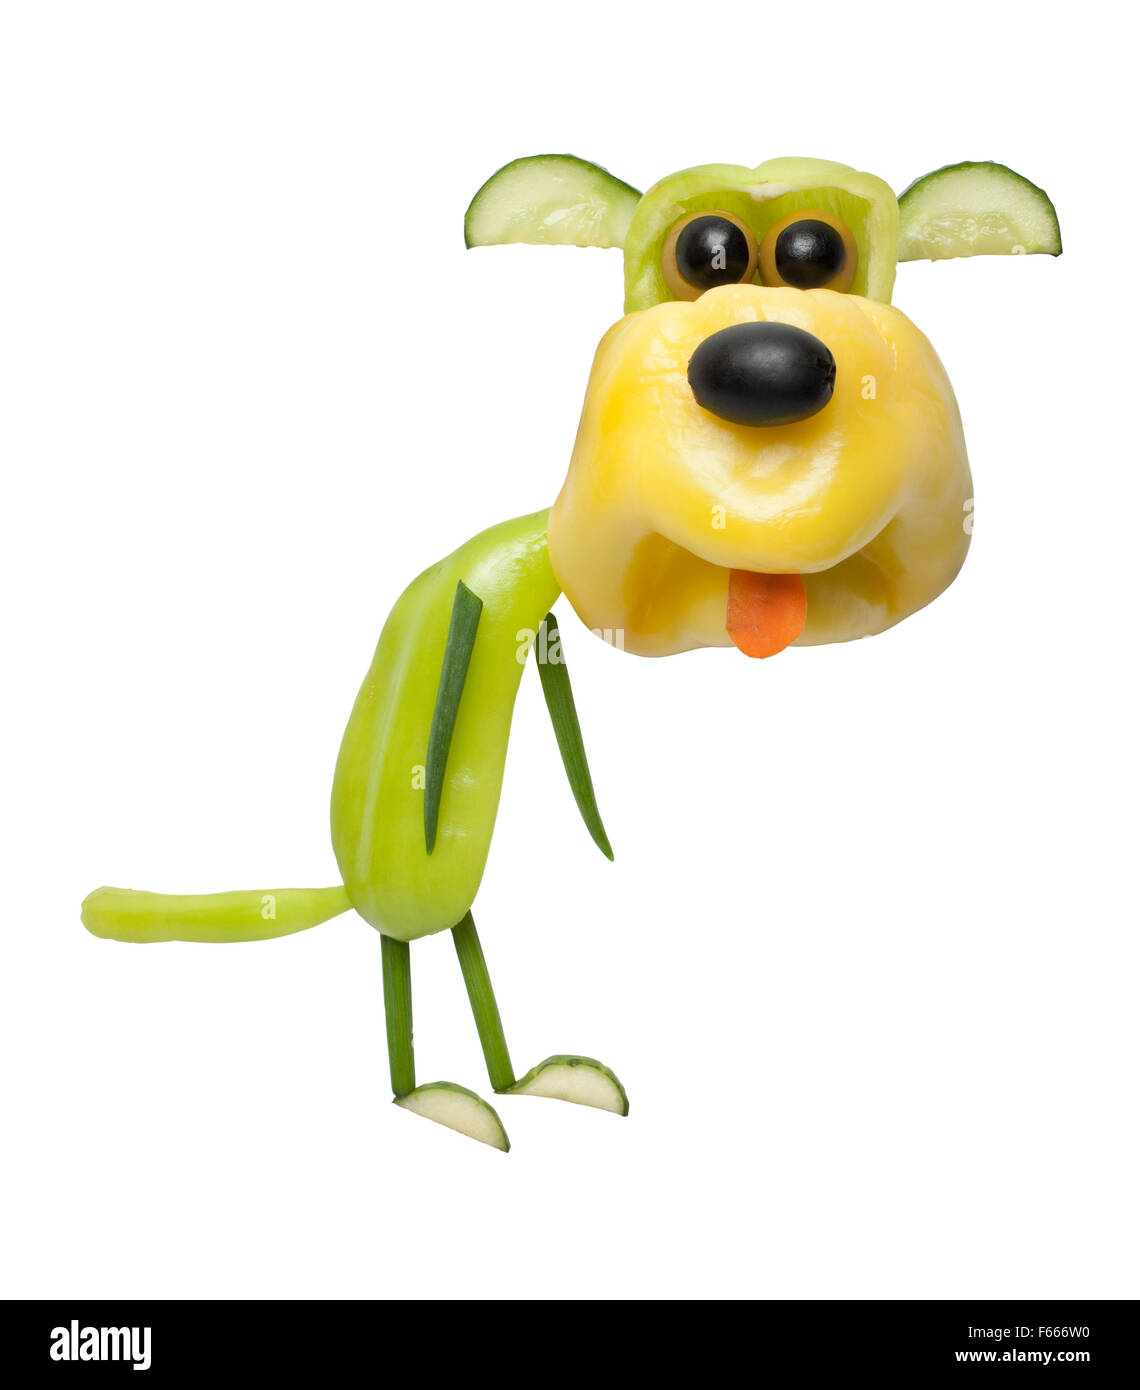 Lustige Hund aus Pfeffer, Zwiebeln und Oliven Stockfotografie - Alamy